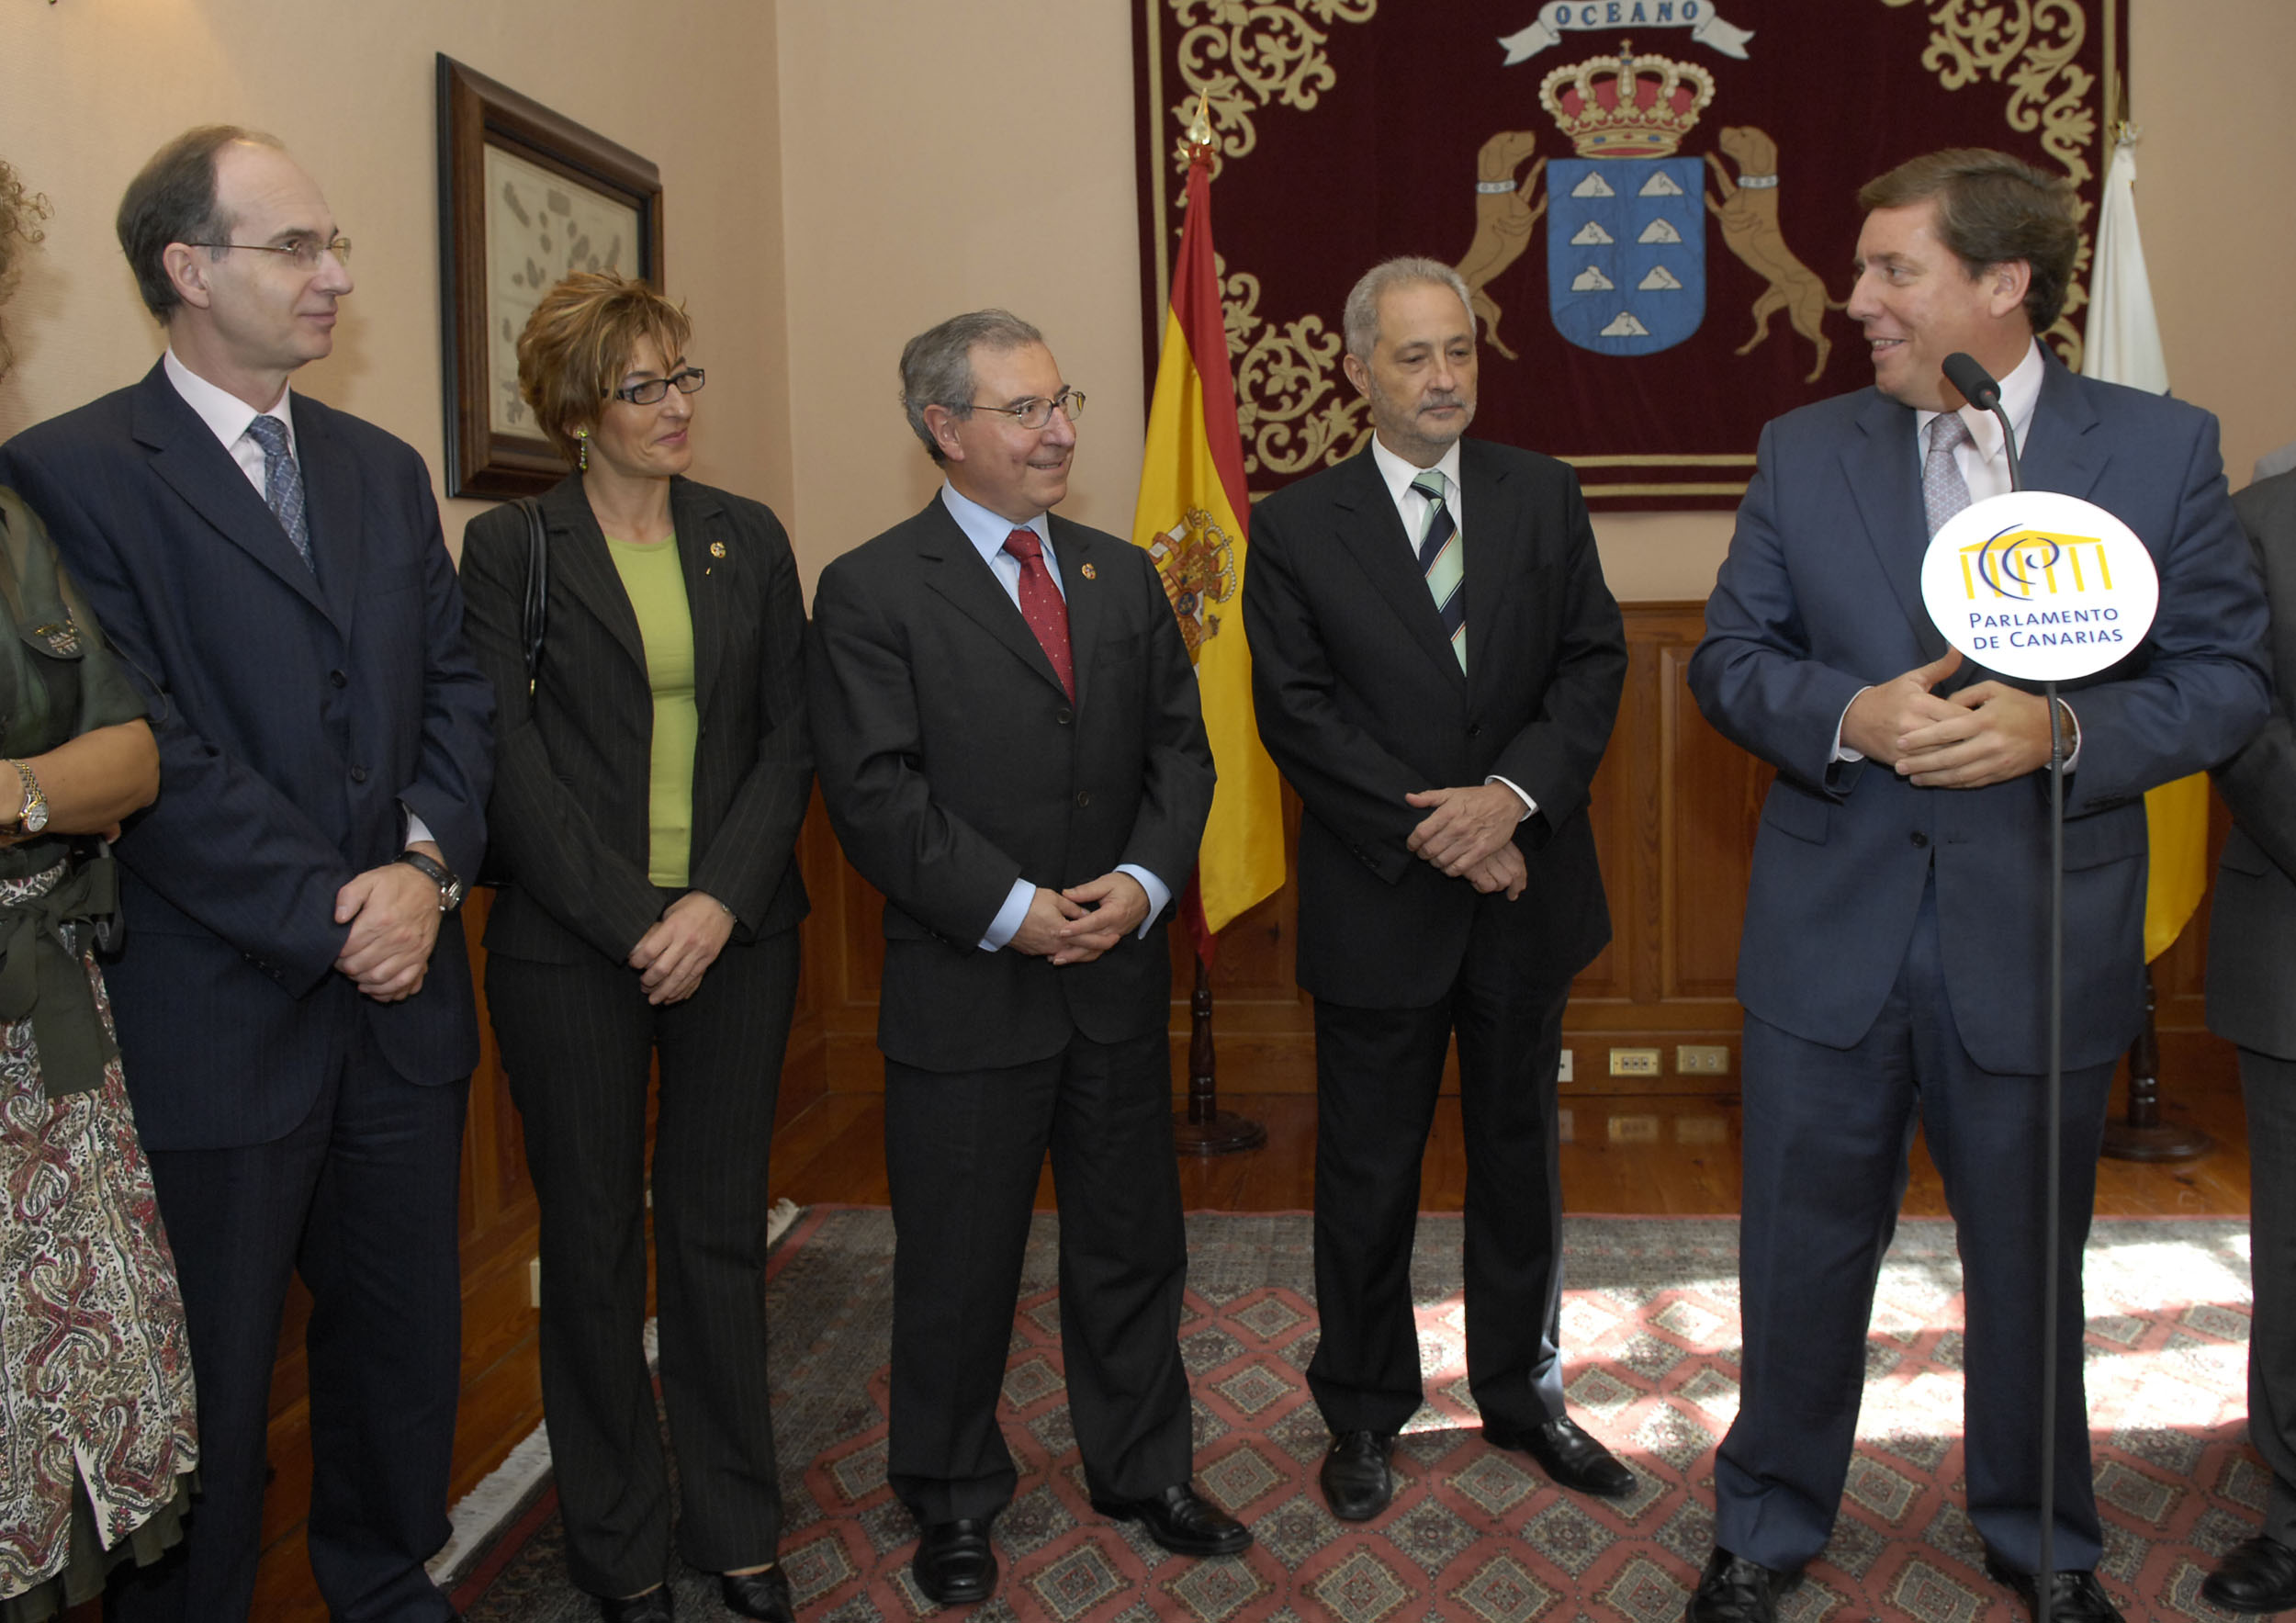 Intervención del presidente del Parlamento de Canarias durante la recepción ofrecida a la delegación cántabra en la Cámara legislativa